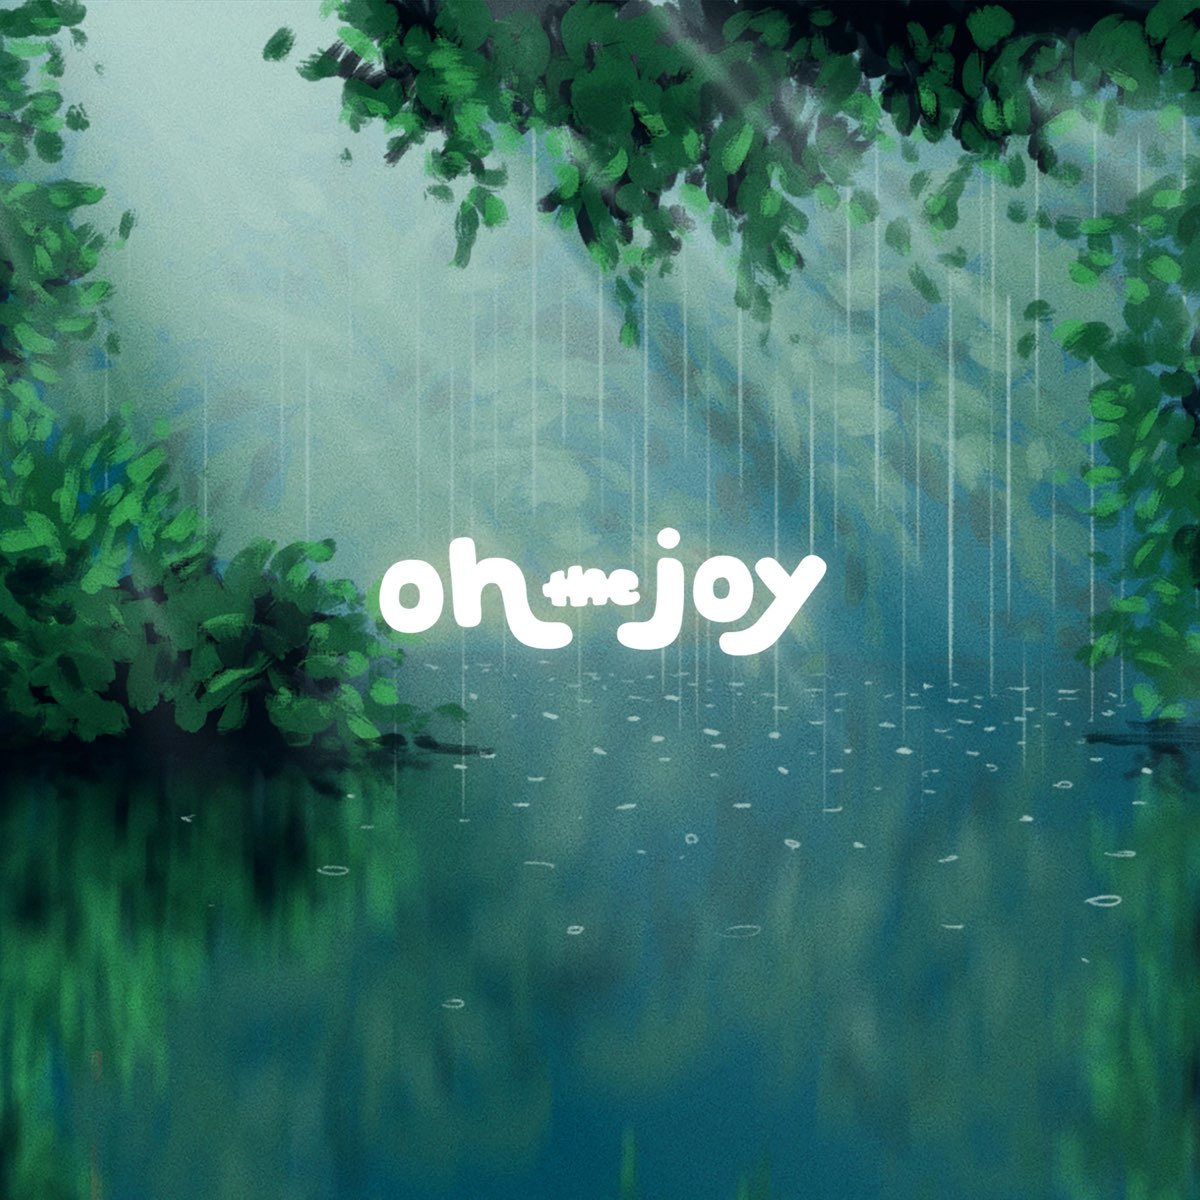 Rain oh